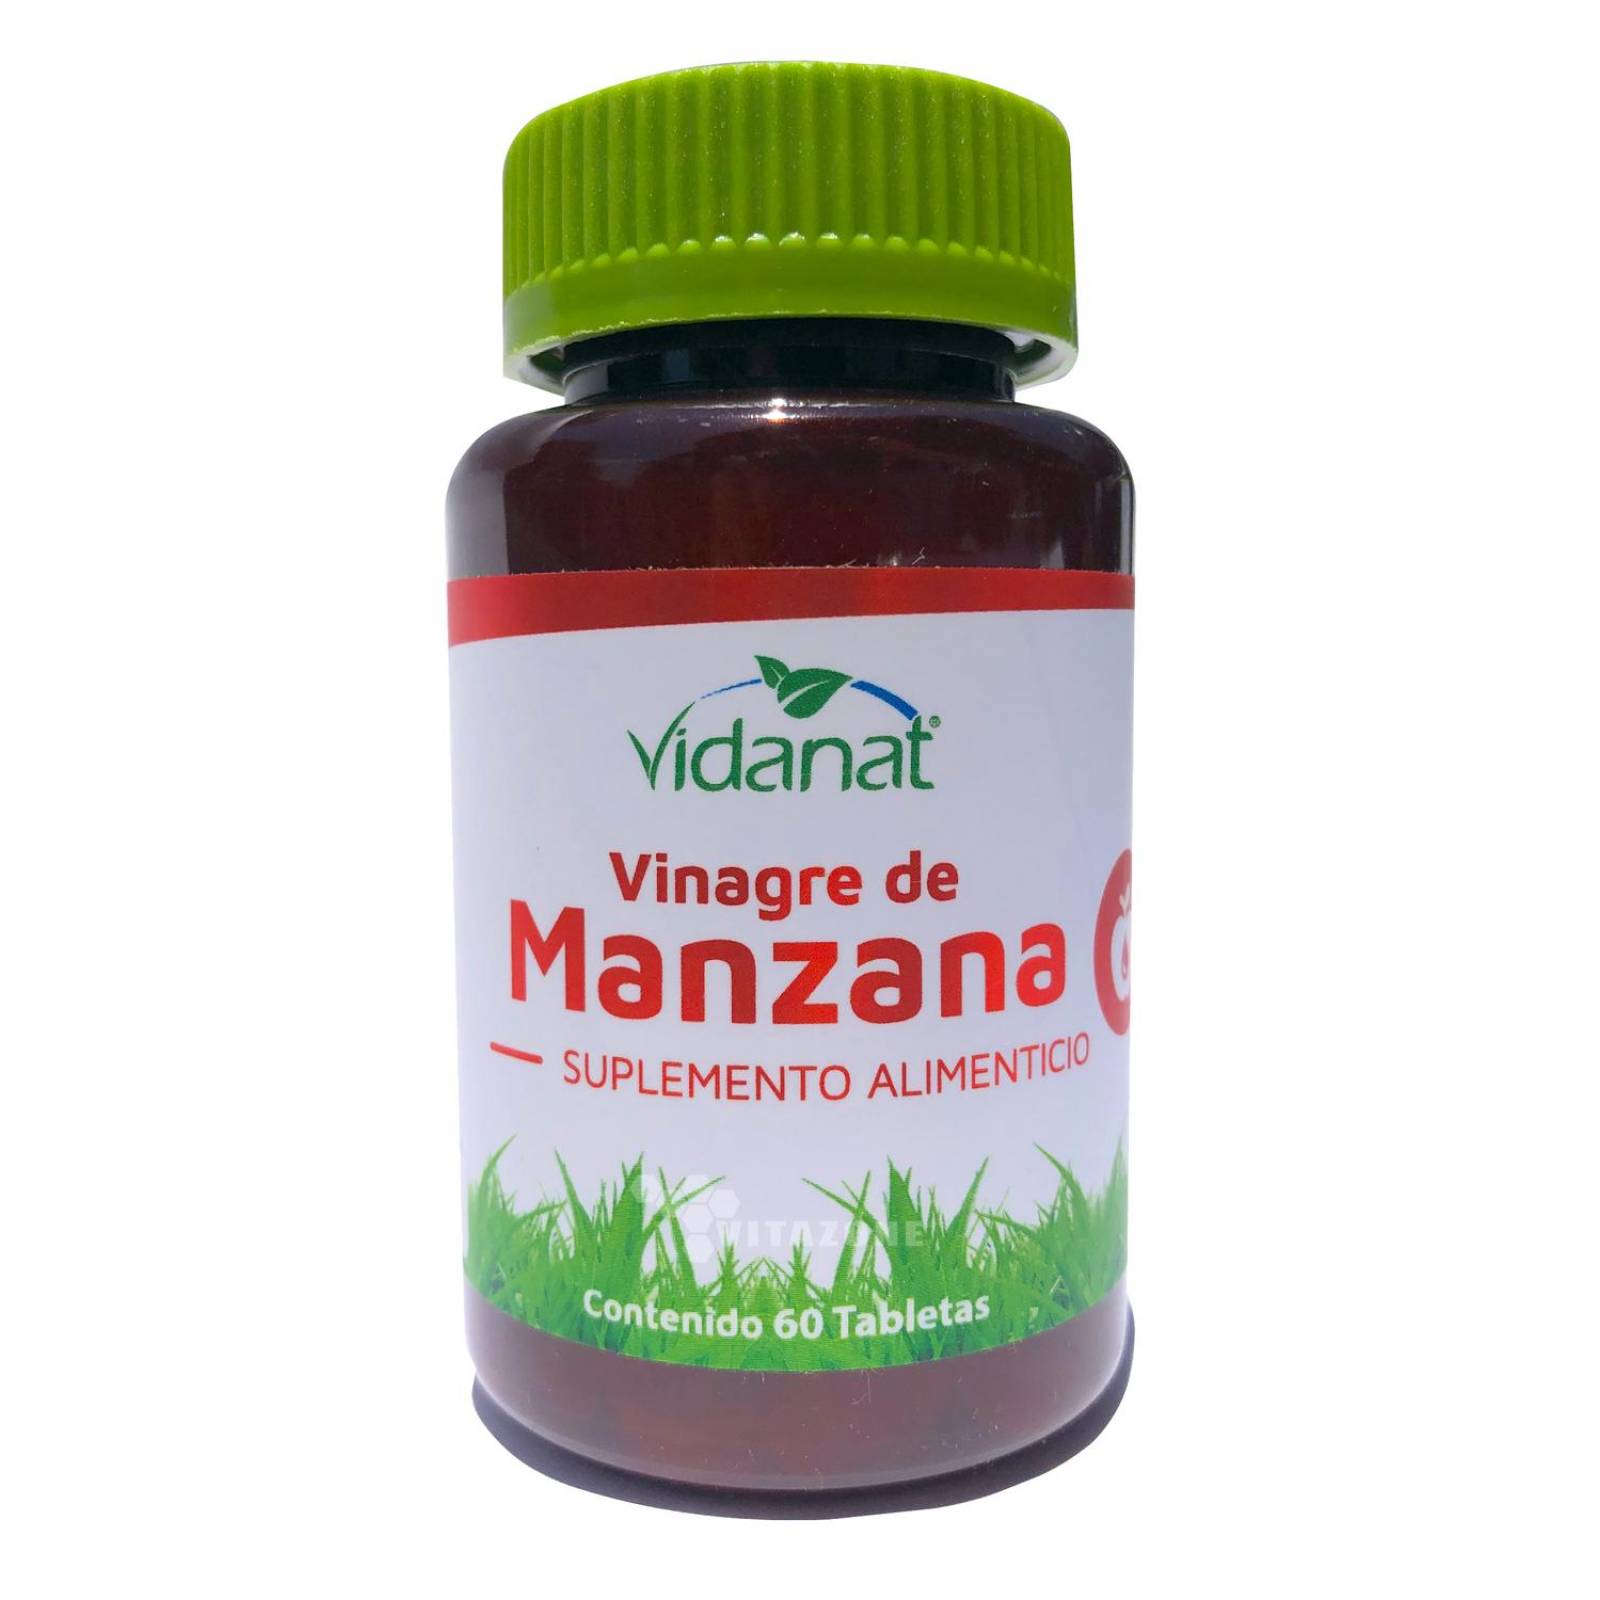 Vinagre de Manzana 60 tabletas Vidanat 